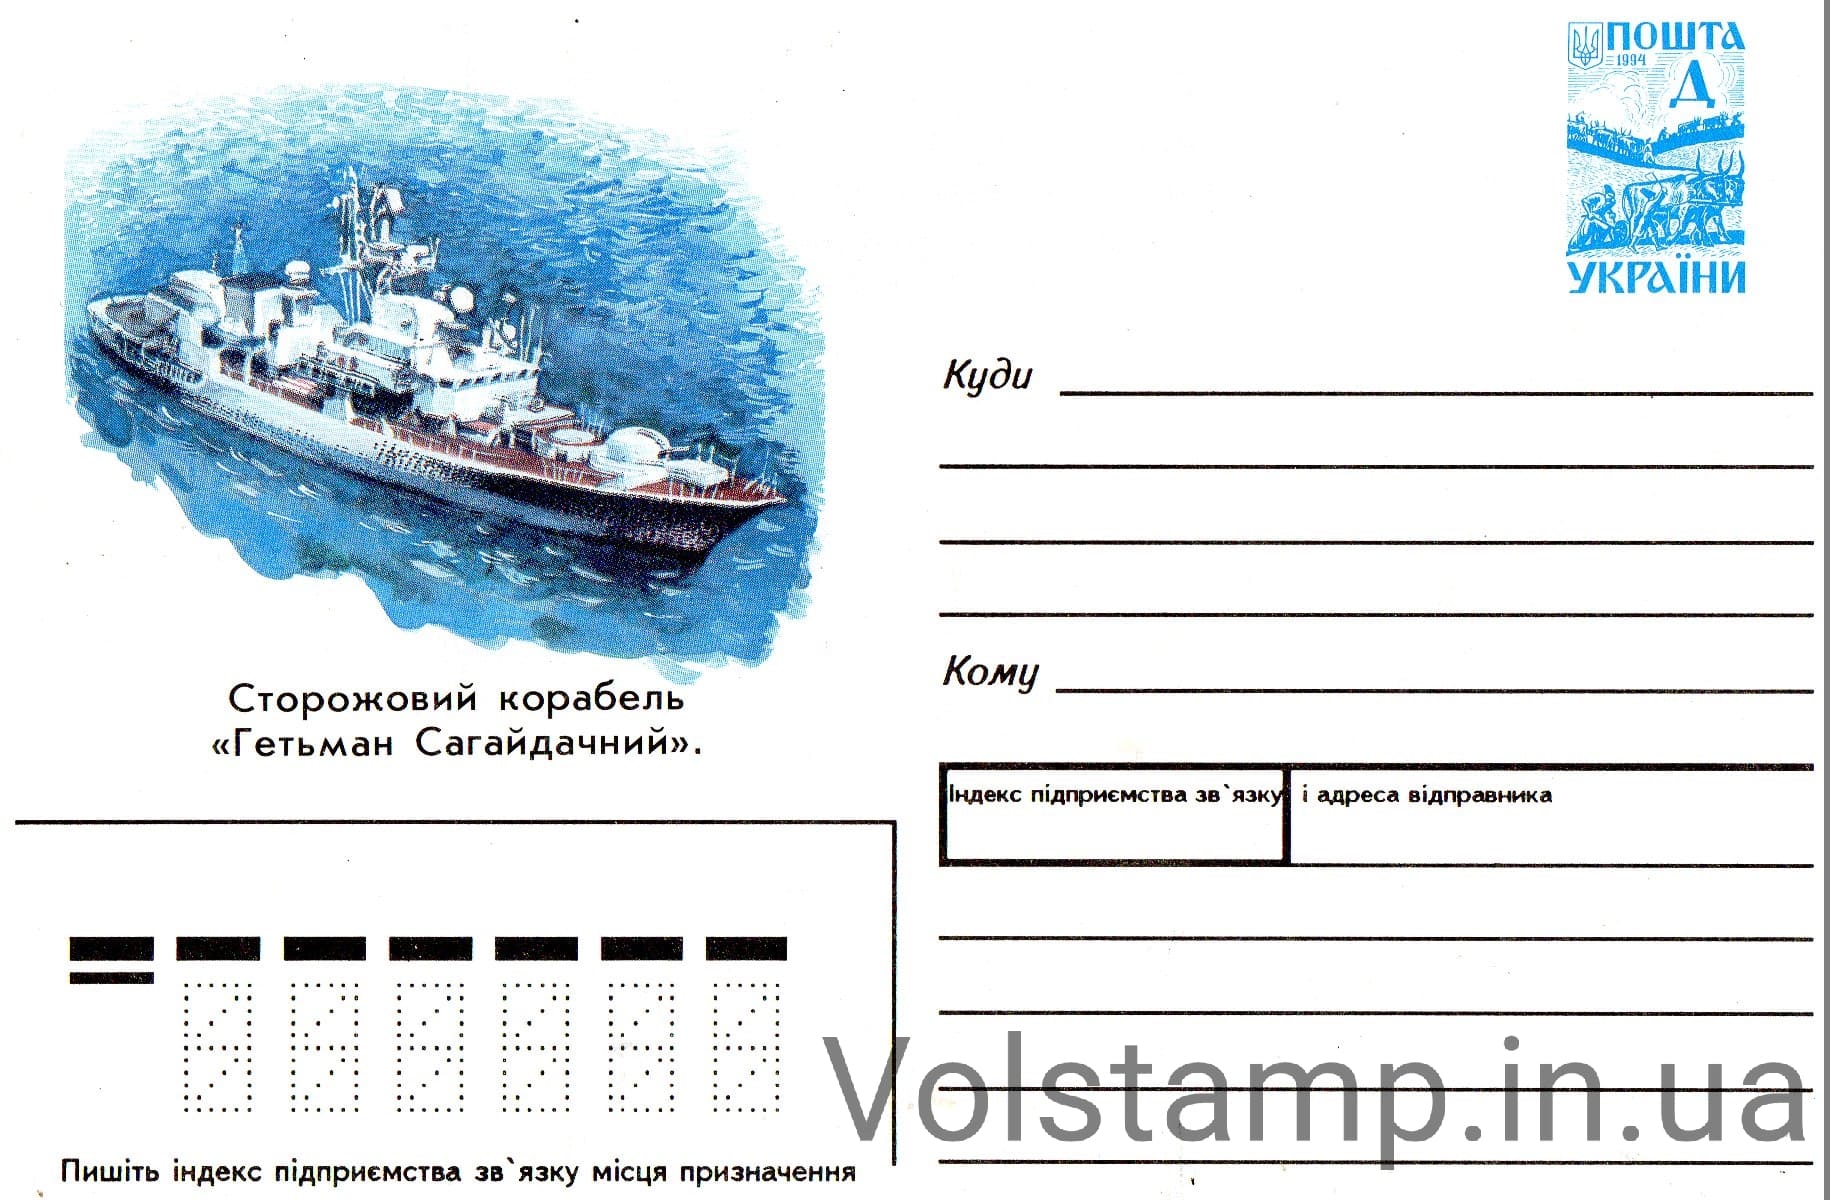 1996 ХМК Корабль Гетман Сагайдачный №109